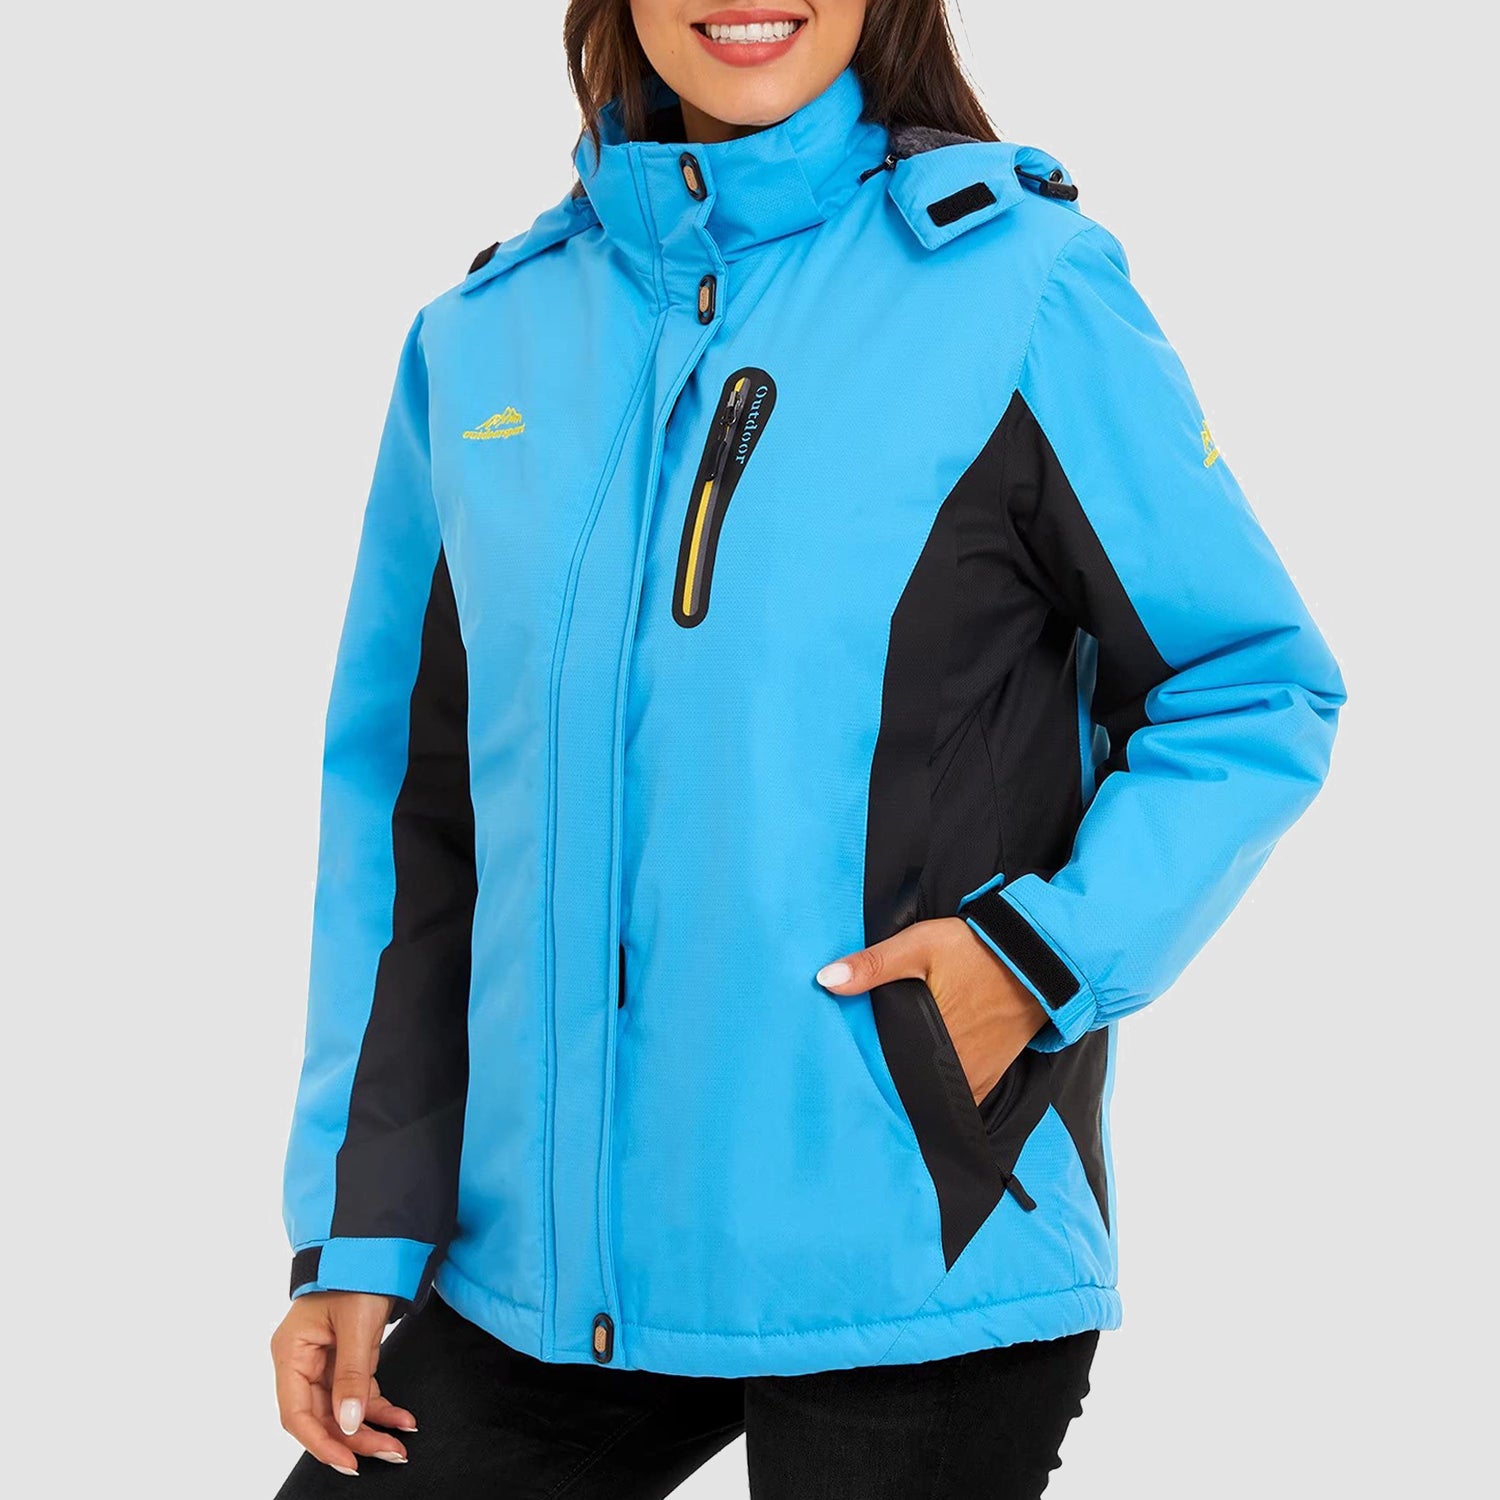 Women's Winter Coats Water Resistant Snow Ski Jacket Fleece Lined with Hood